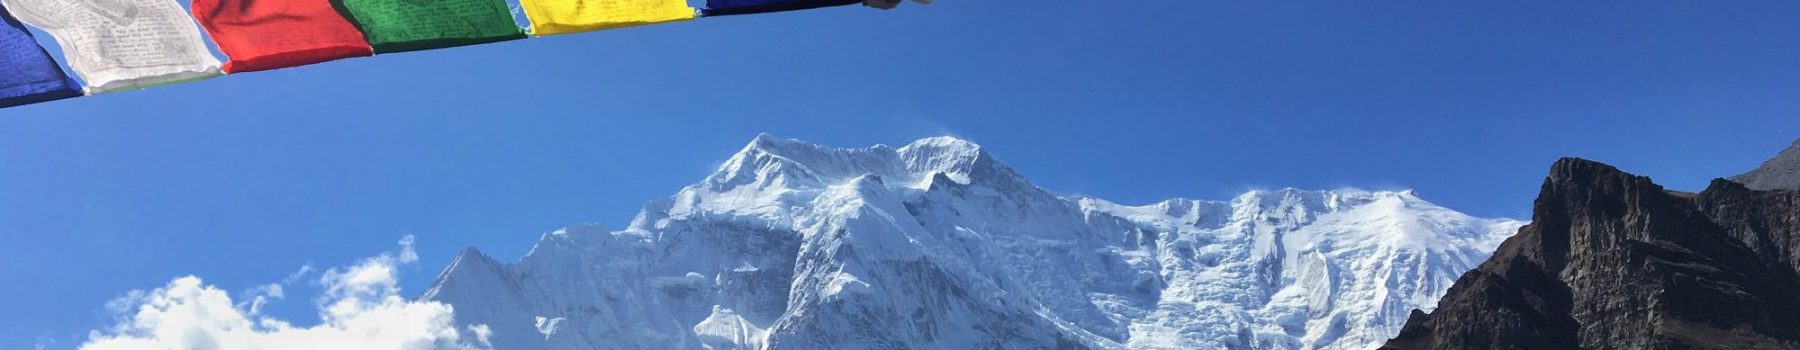 Himalaya Fair Trekking - Trekking und Mountainbike-Reisen nach Nepal, Bhutan und Ladakh.